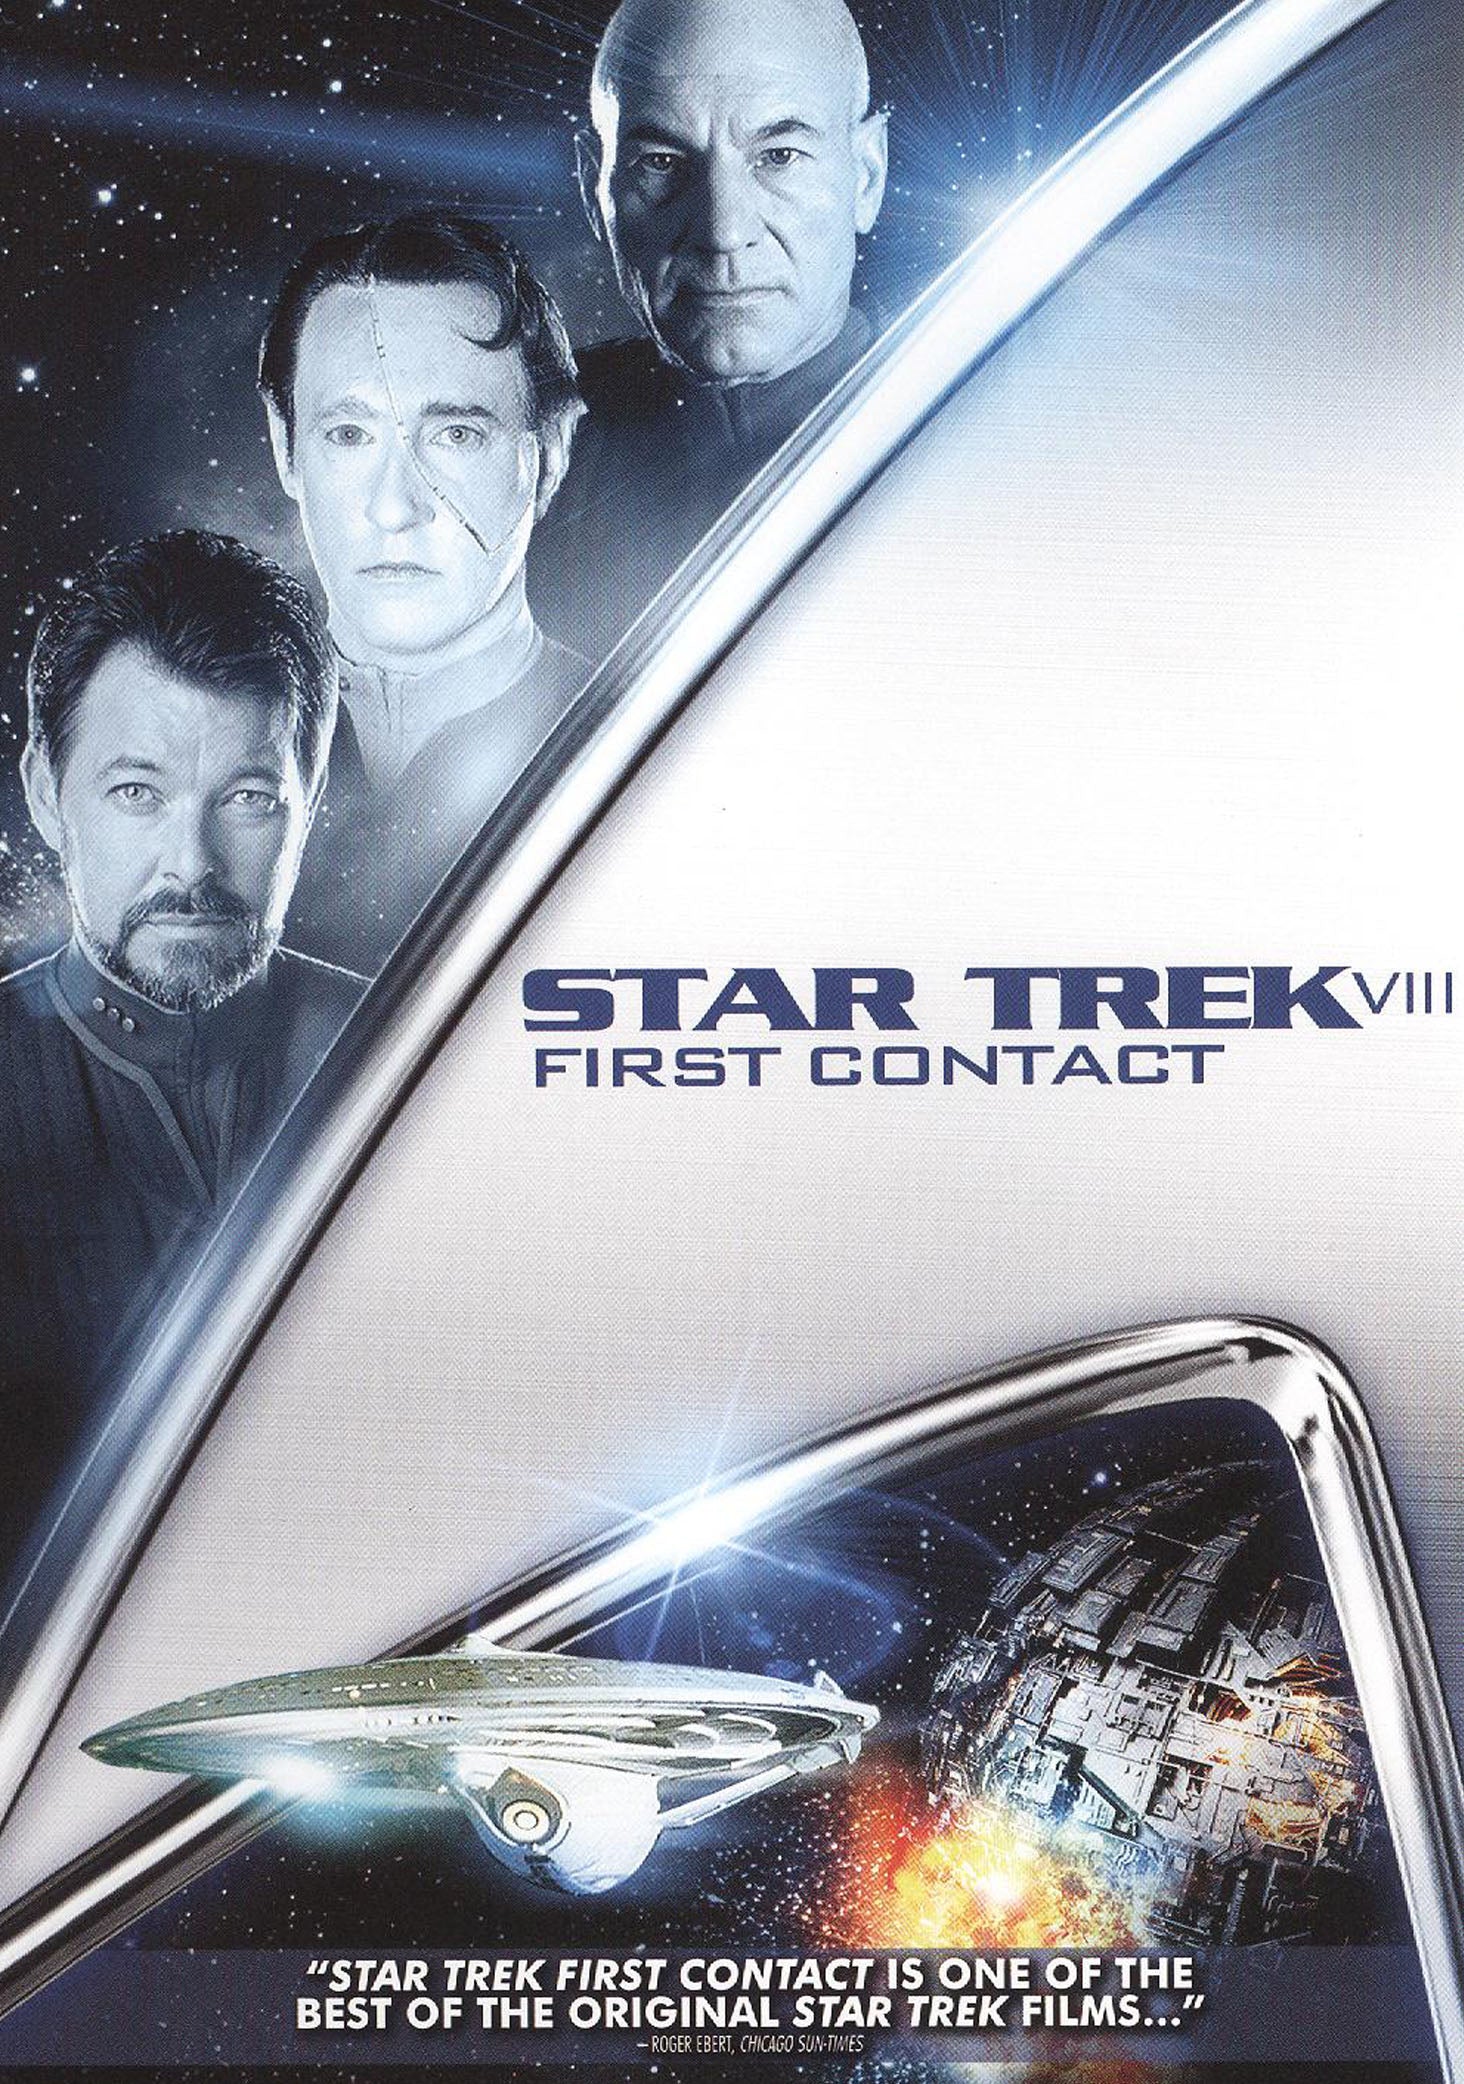 Star Trek VIII: First Contact cover art